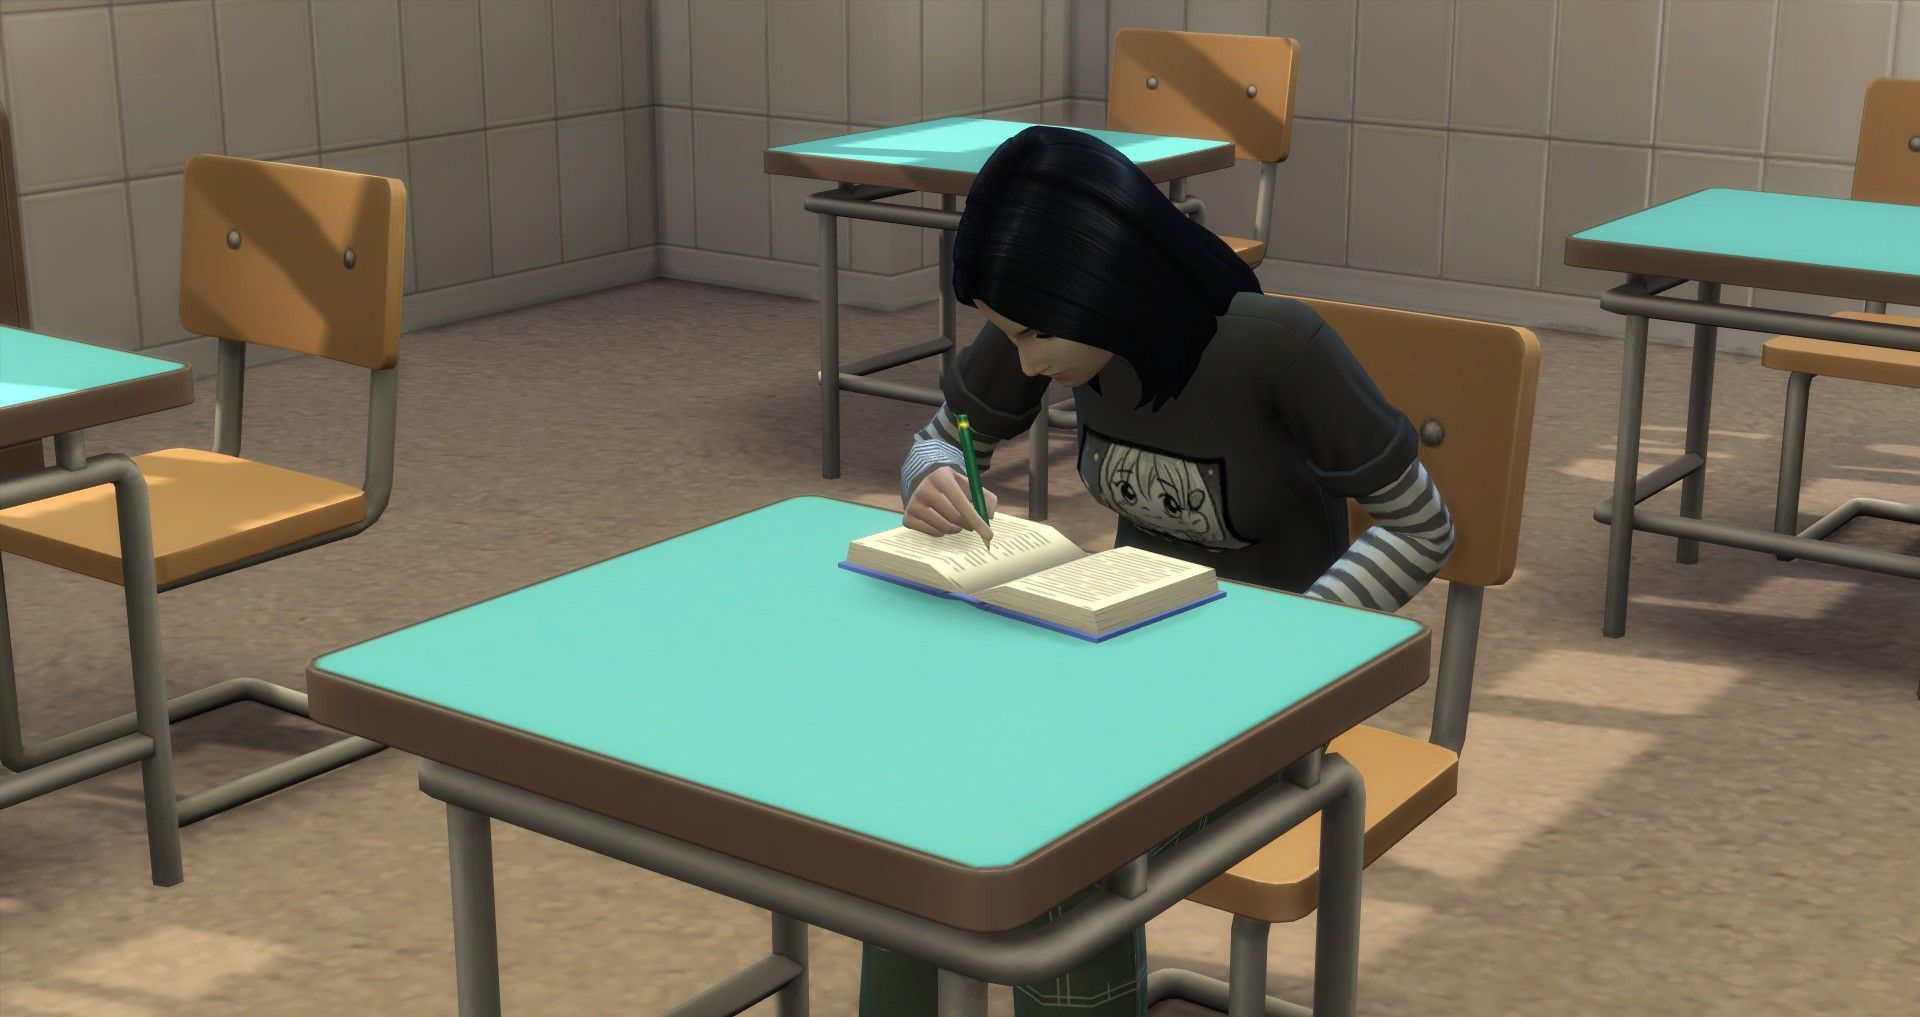 Сим делает домашнее задание за партой Старшая школа Sims 4 рано заканчивает школу